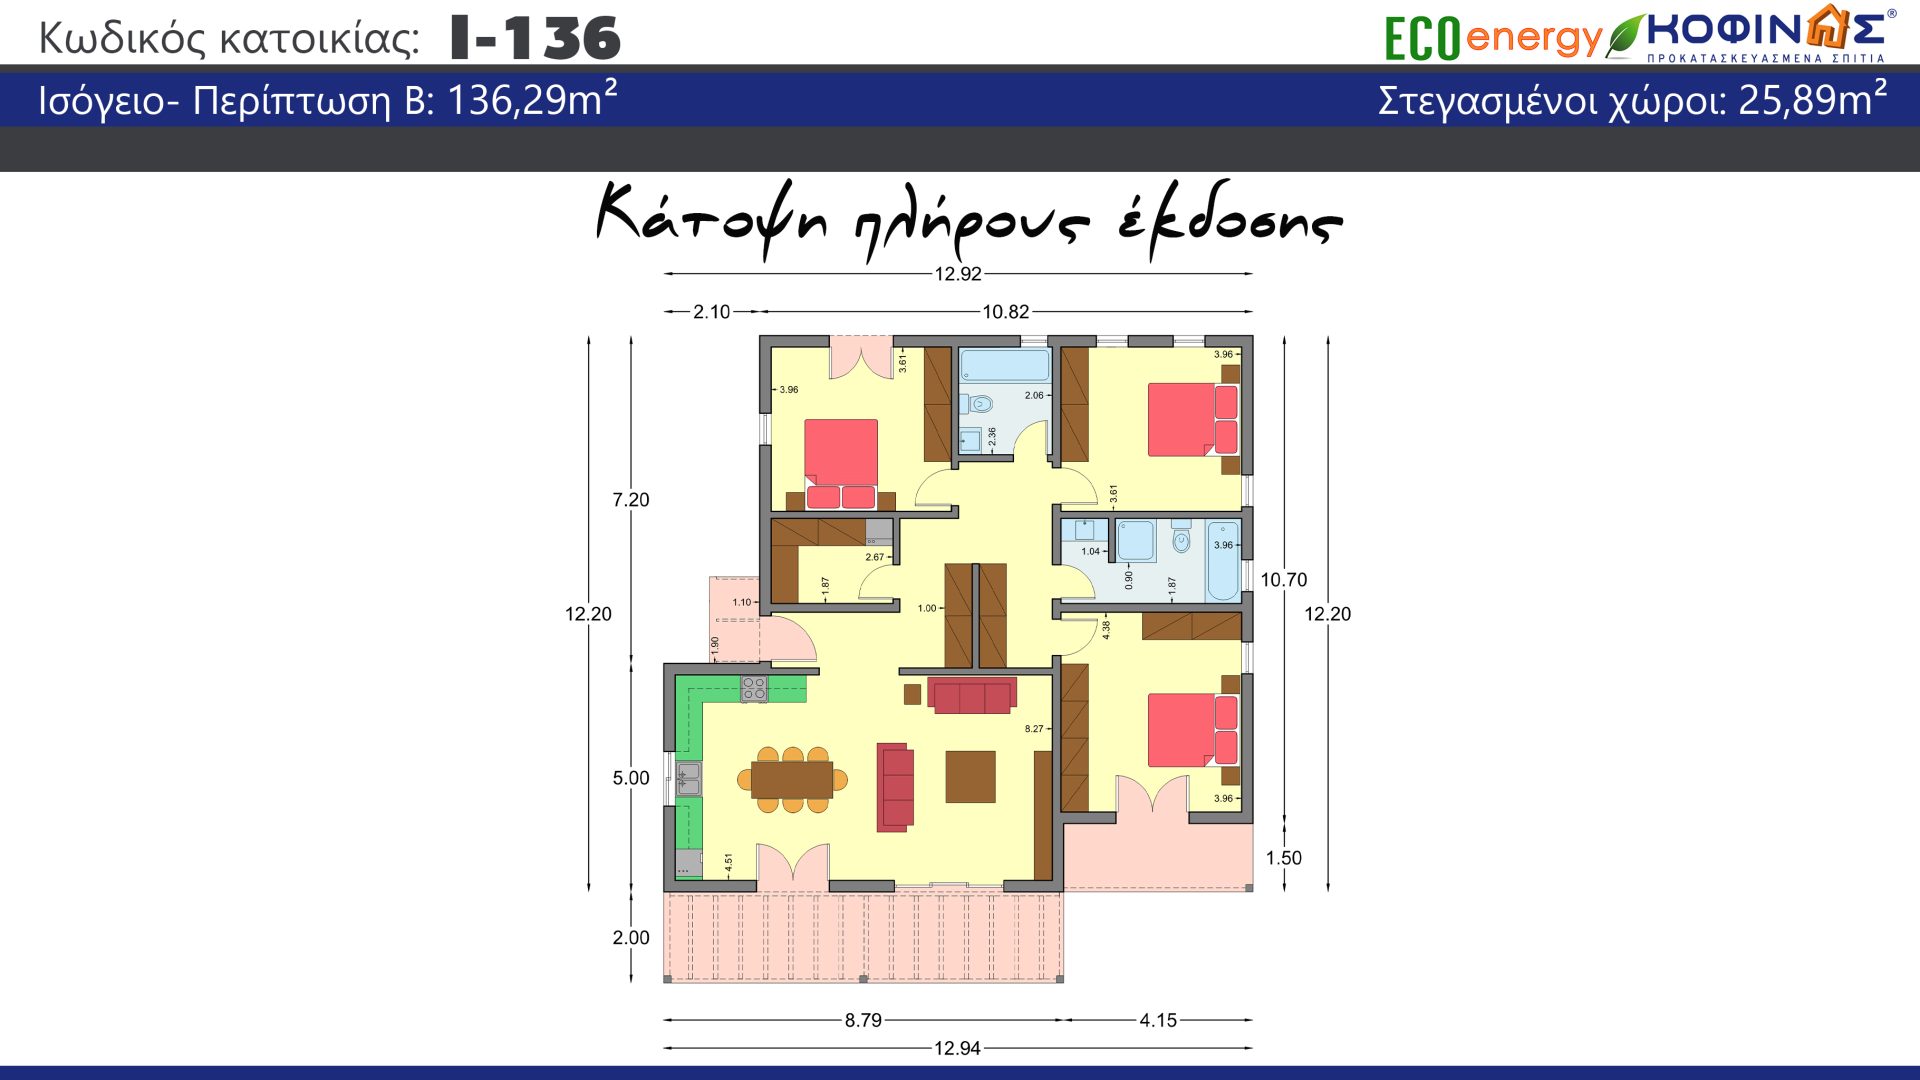 Ισόγεια Κατοικία I-136, συνολικής επιφάνειας 136,29 τ.μ., στεγασμένοι χώροι 8,31 τ.μ. (Περίπτωση Α), στεγασμένοι χώροι 25.89 τ.μ (Περίπτωση Β)